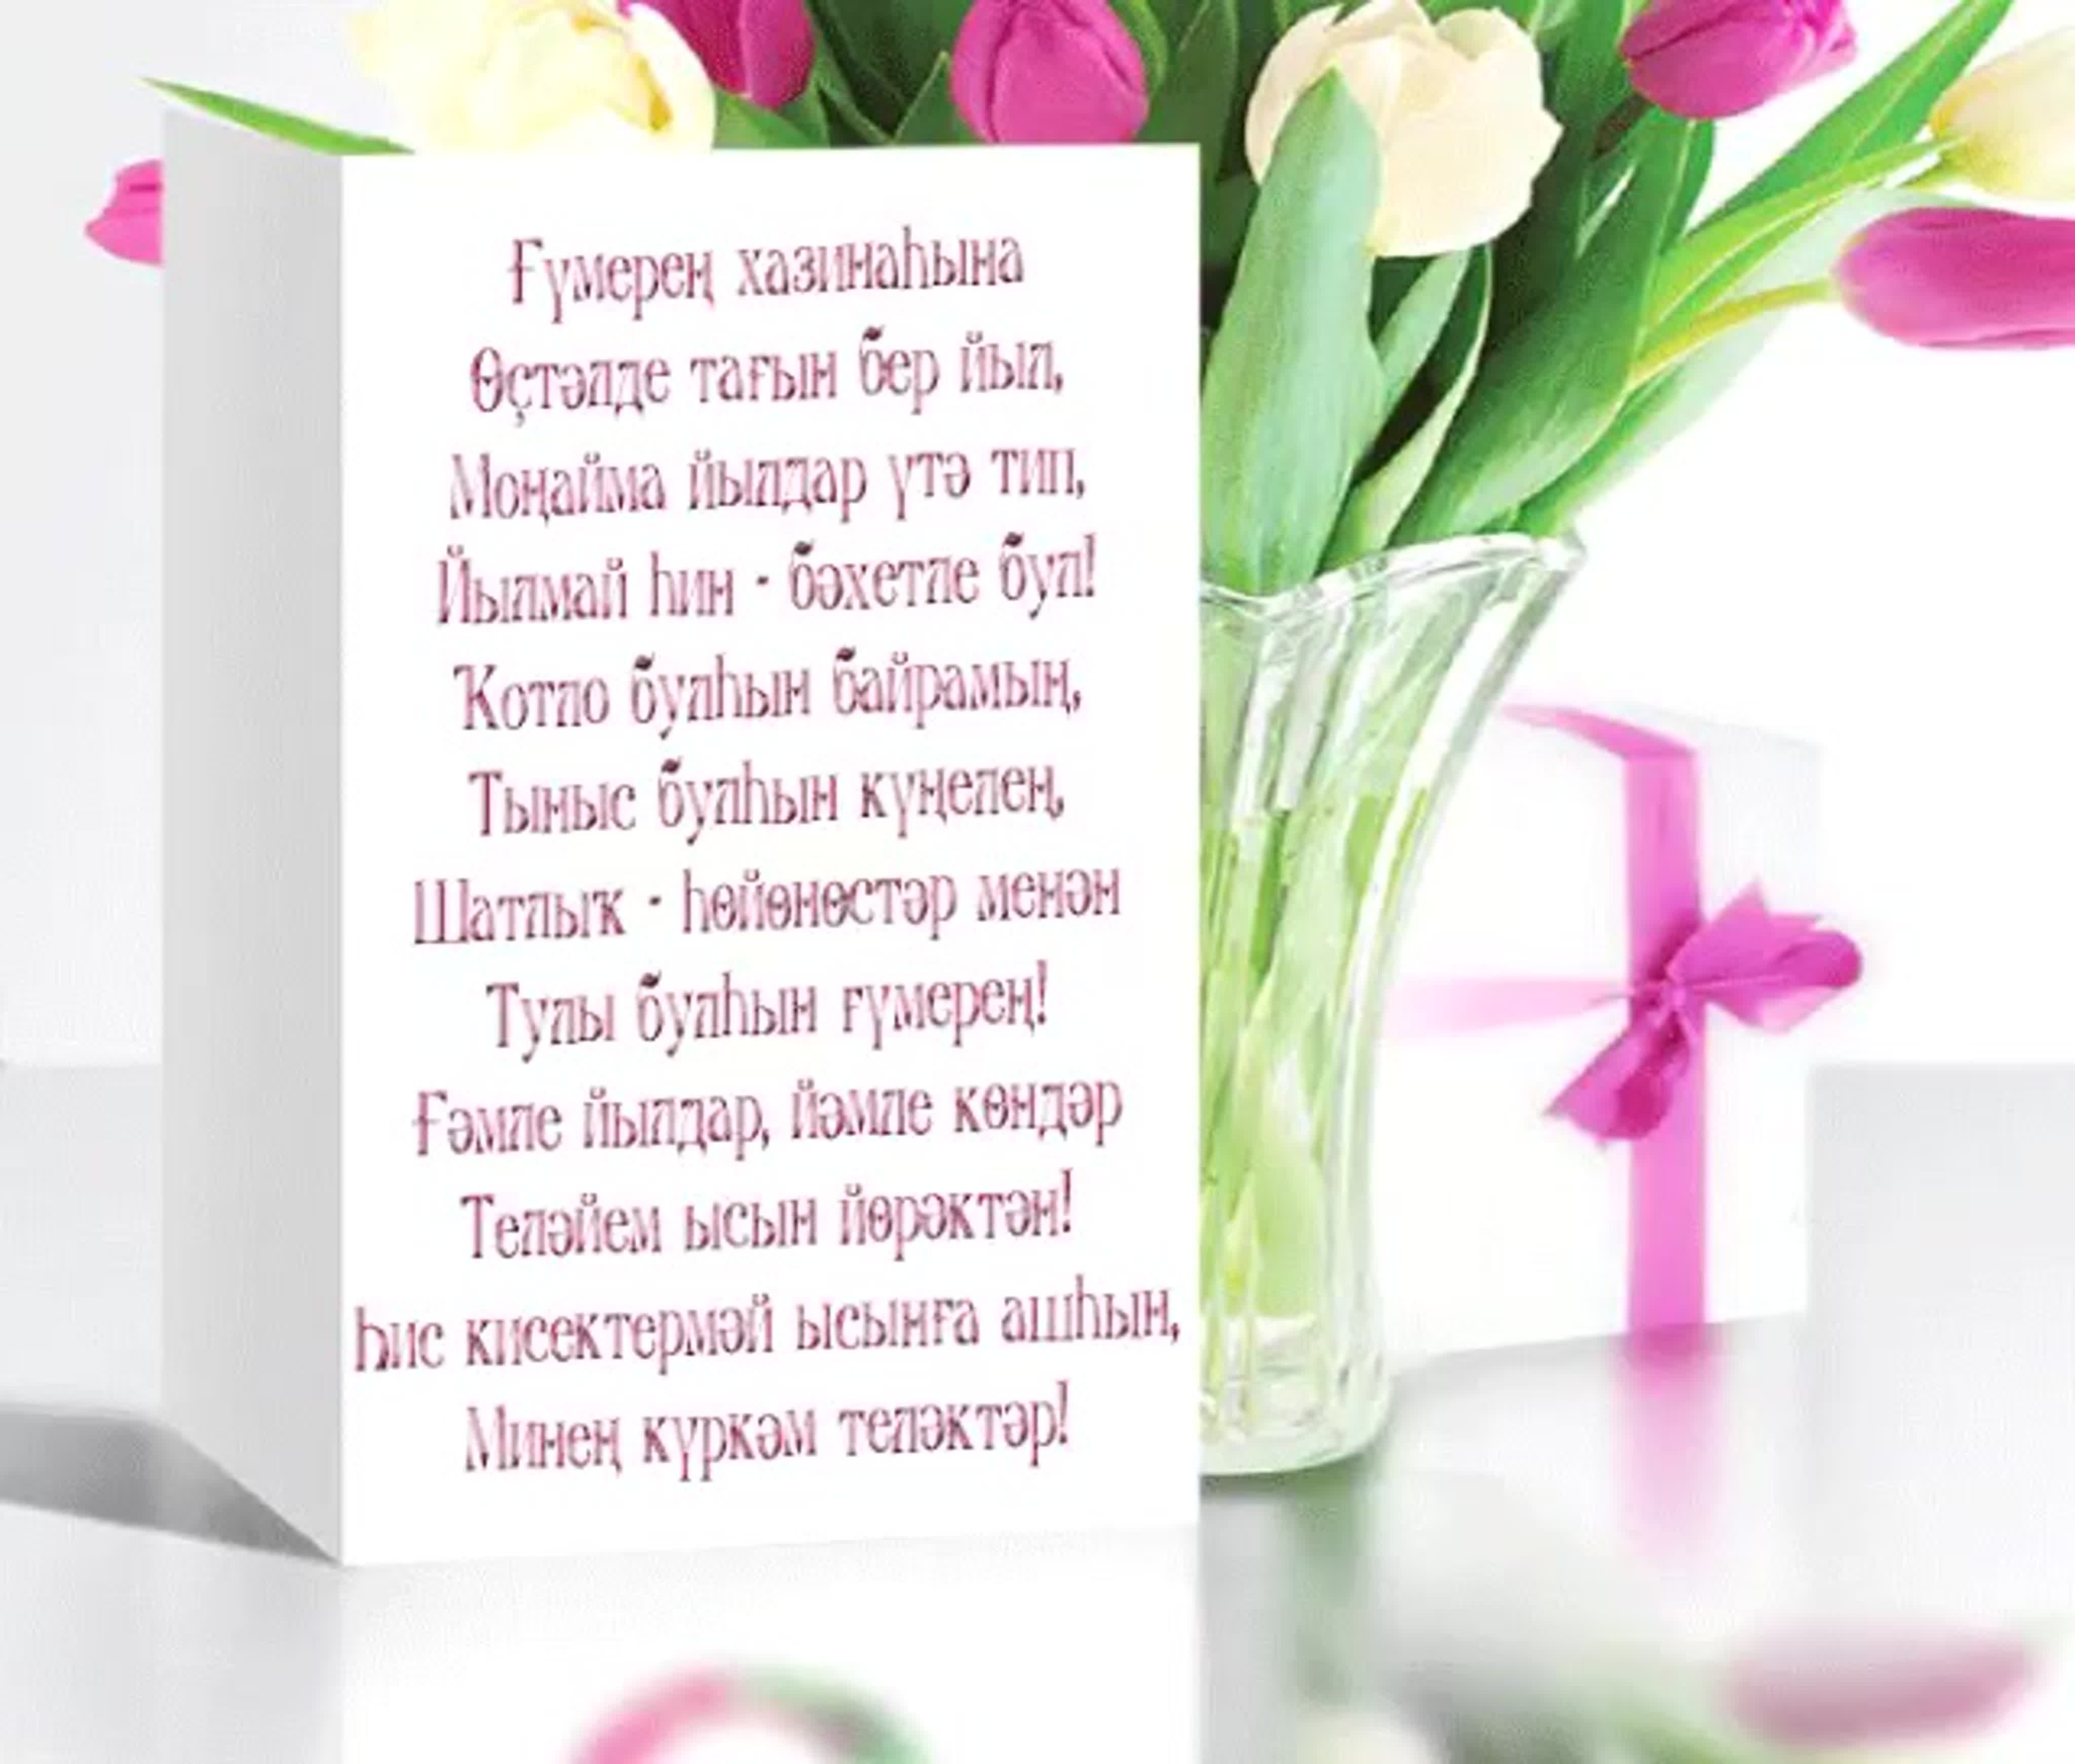 Башкирский поздравление с днем. Поздравления с днём рождения на башкирском языке. Поздравления с днём рождения женщине на башкирском языке. Пожелания с днём рождения на башкирском. Поздравления башкирском языке женщине.